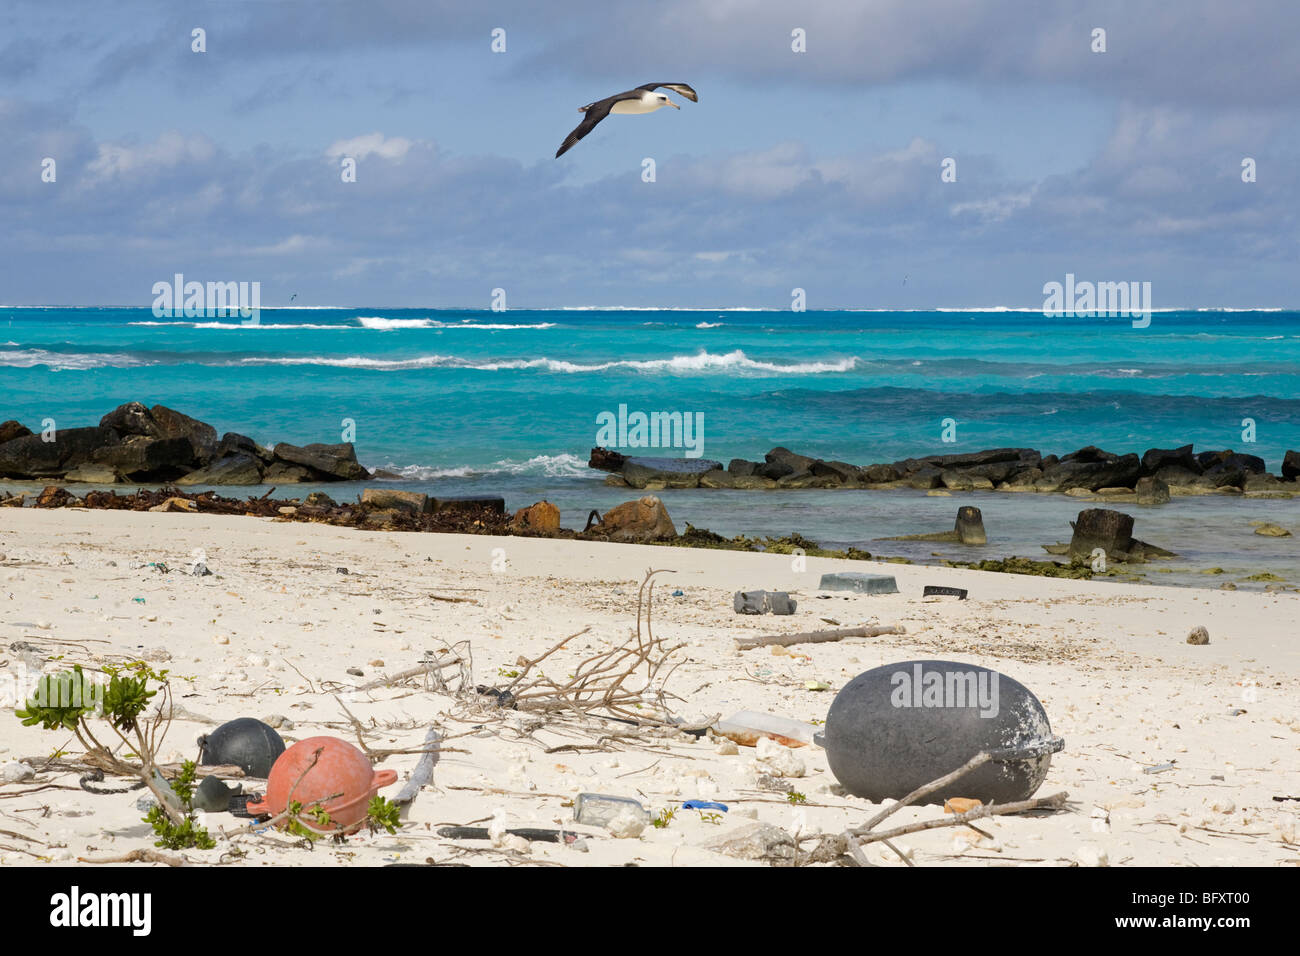 Albatros de Laysan (Phoebastria immutabilis) survolant les débris marins du littoral sur la plage d'une île du Pacifique Nord Banque D'Images